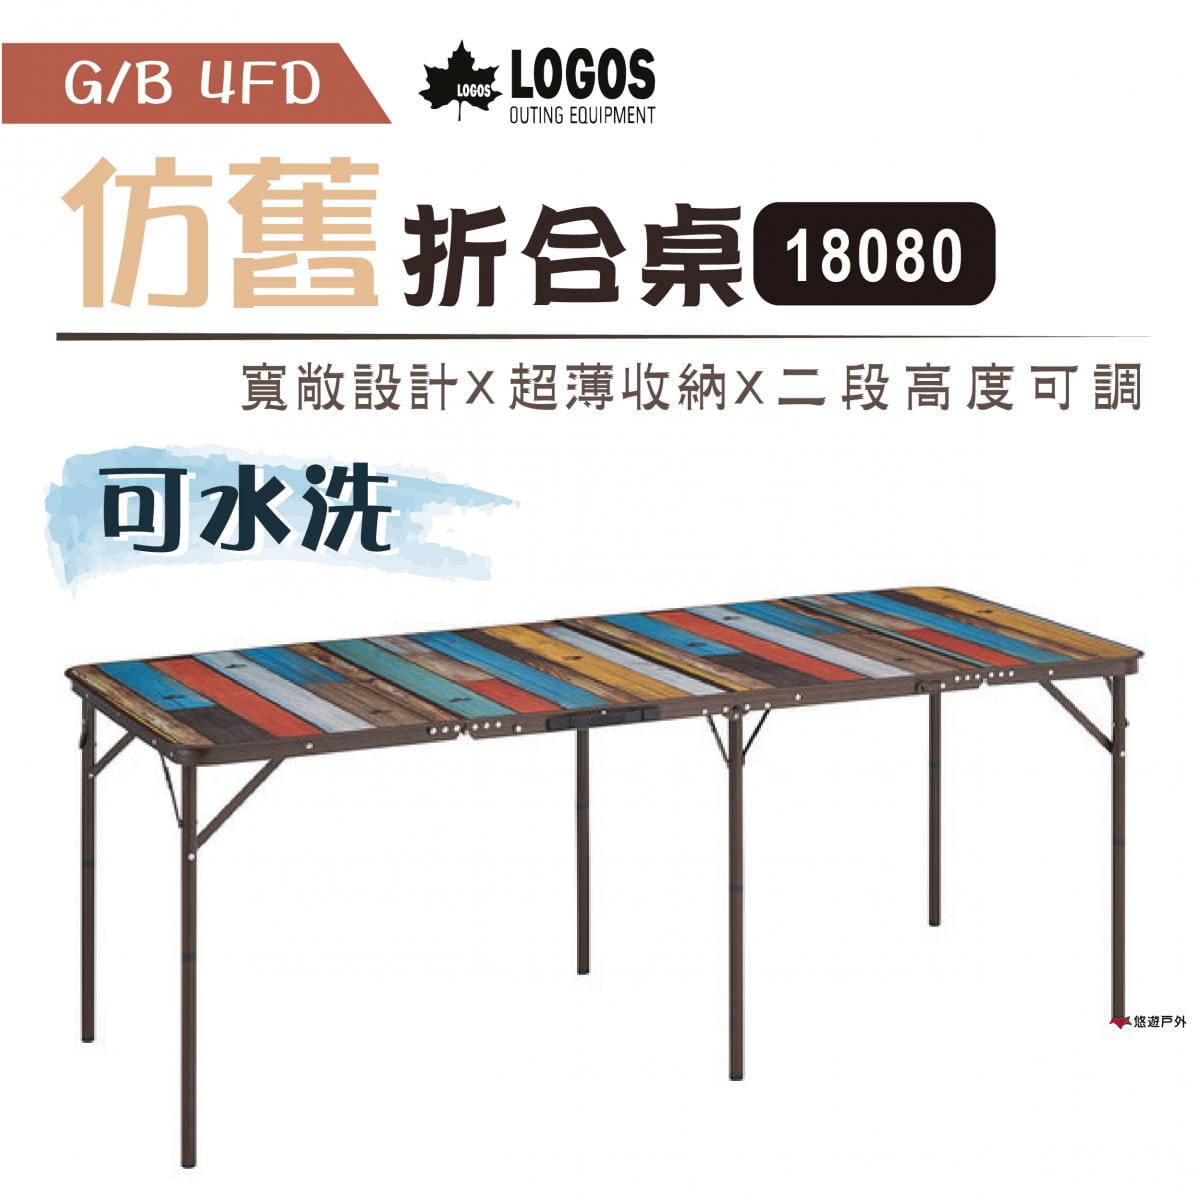 【日本LOGOS】G/B 4FD折合桌18080(水洗仿舊) LG73200041 0